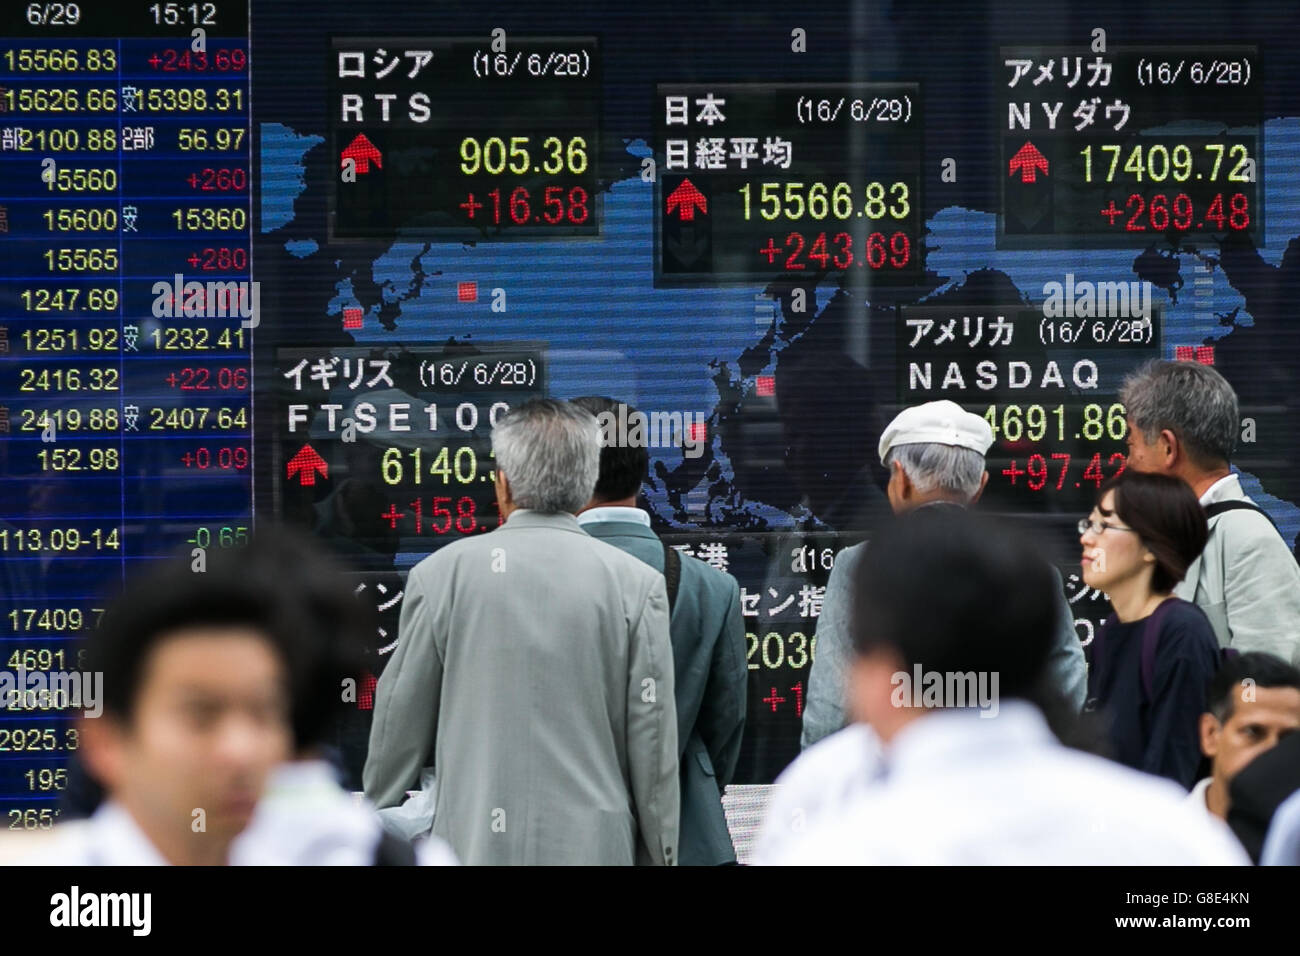 Tokyo, Japon. 29 Juin, 2016. Les piétons passent devant un stock électronique à la Bourse de Tokyo le 28 juin 2016, Tokyo, Japon. Le Nikkei 225 Stock Average a augmenté de 243,69 points, ou 1,59 %, à 15 566,83 le mercredi au milieu d'une semaine après que les électeurs britanniques ont choisi de quitter l'UE. Le même indice était tombé 1286.3 points le vendredi précédent 24e lorsque la nouvelle de Brexit ont secoué les marchés financiers internationaux. Credit : Rodrigo Reyes Marin/AFLO/Alamy Live News Banque D'Images